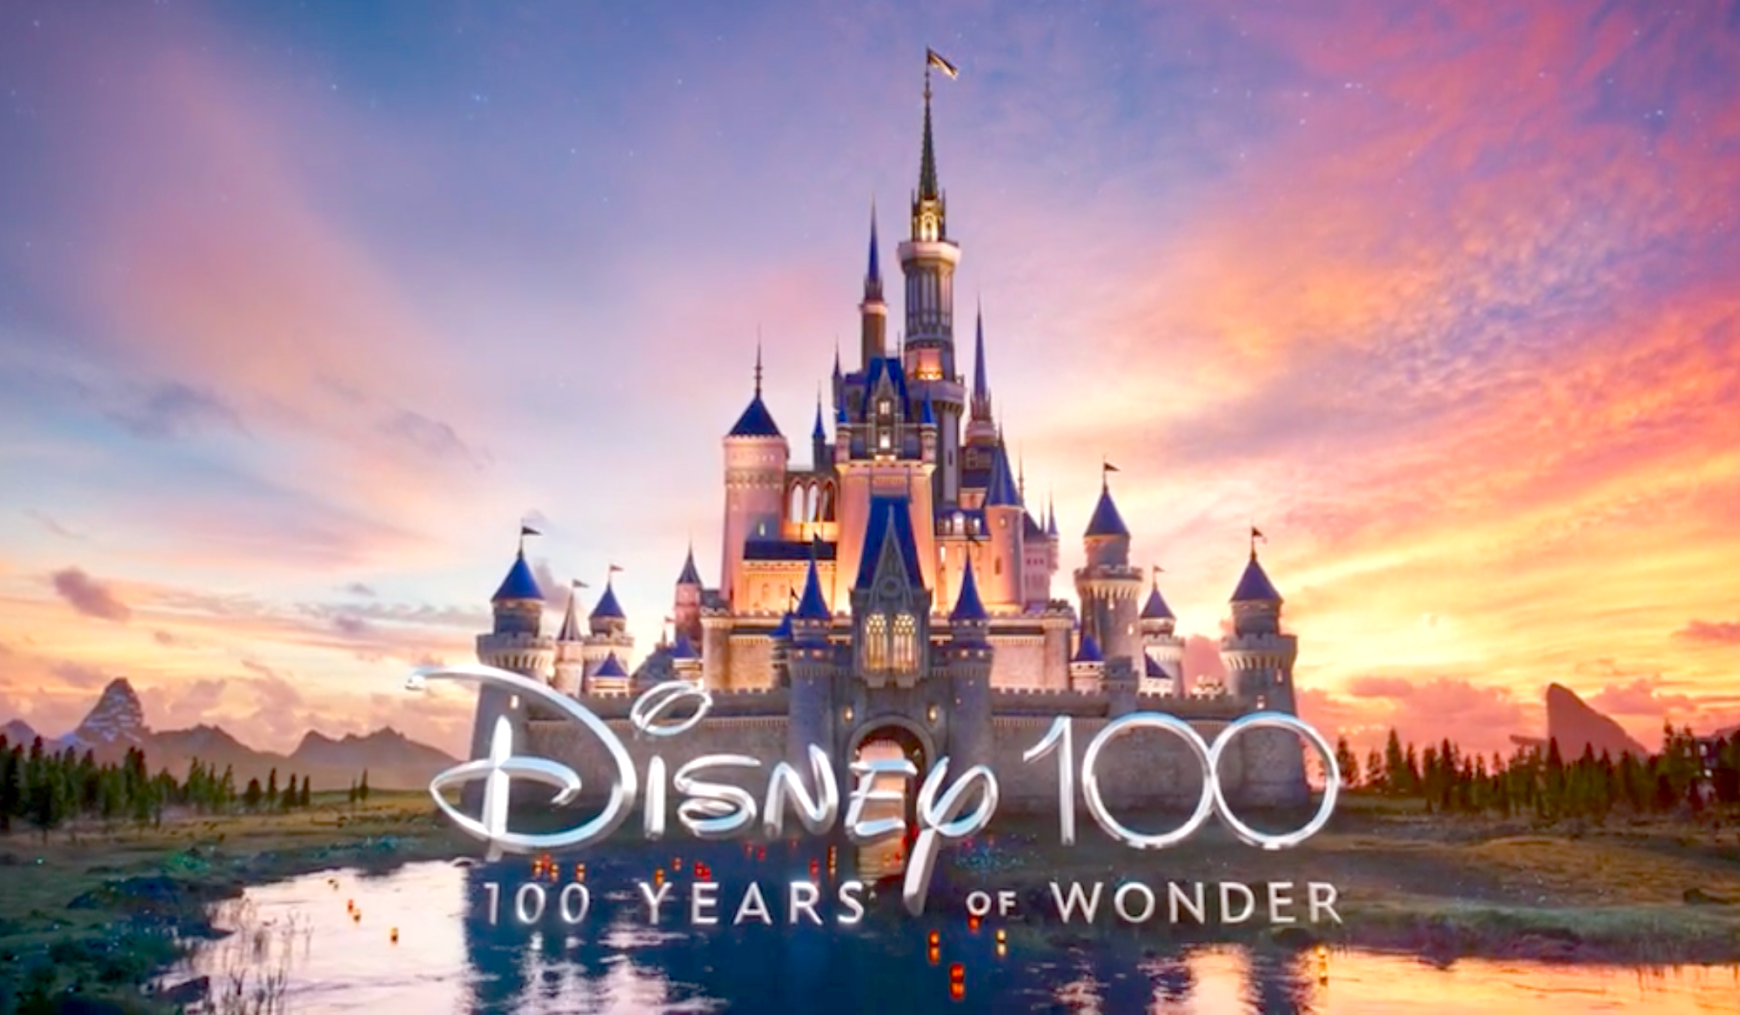 El nuevo logo de Disney es un impresionante rediseño del anterior: así de espectacular luce 'Disney 100'